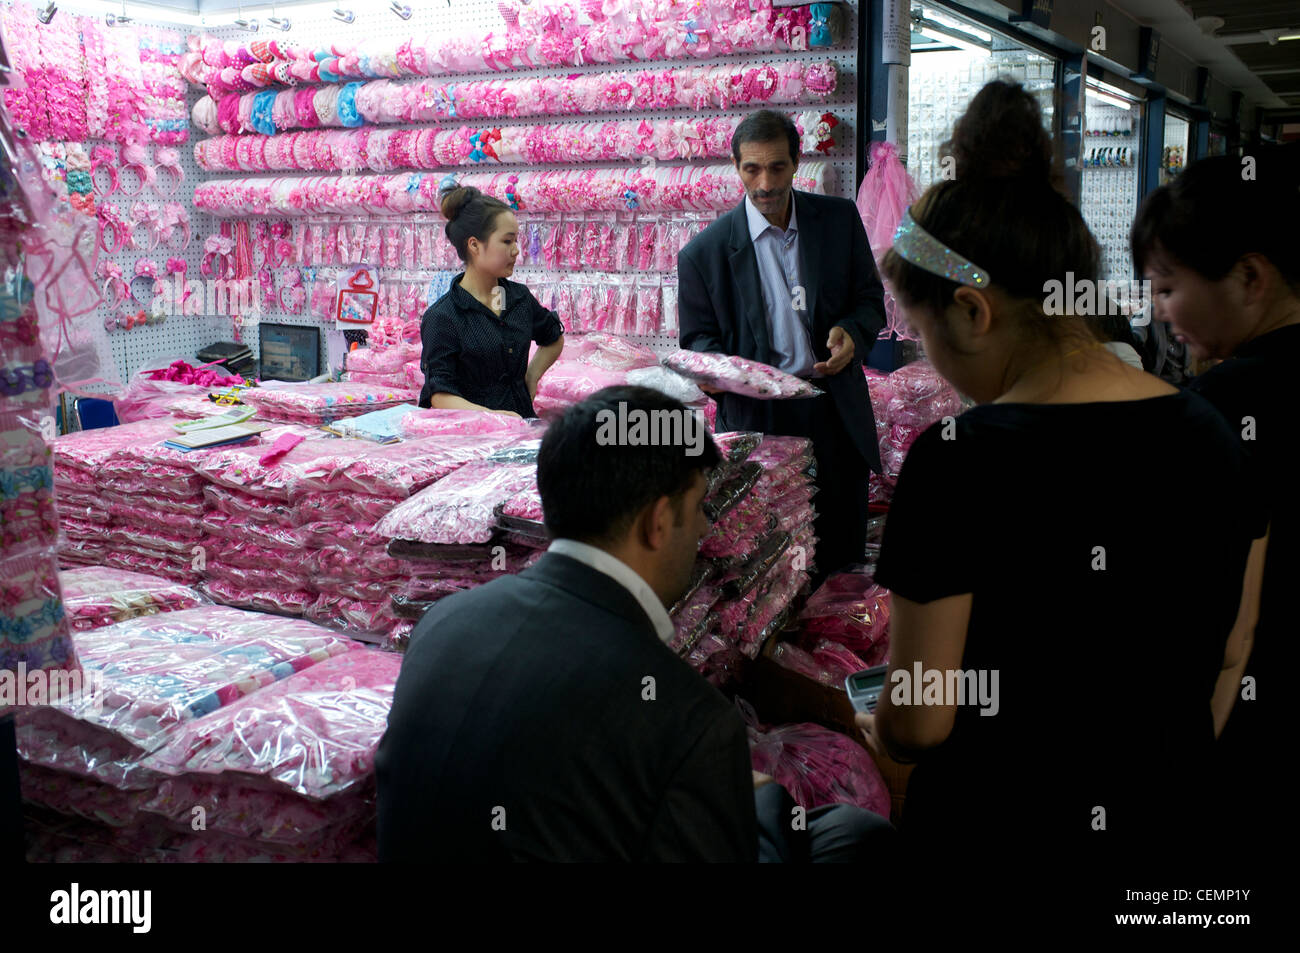 Los mercaderes árabes compra una tienda accesorios de moda en el mercado de Yiwu en Zhejiang, China.05-Nov-2011 Fotografía de stock Alamy